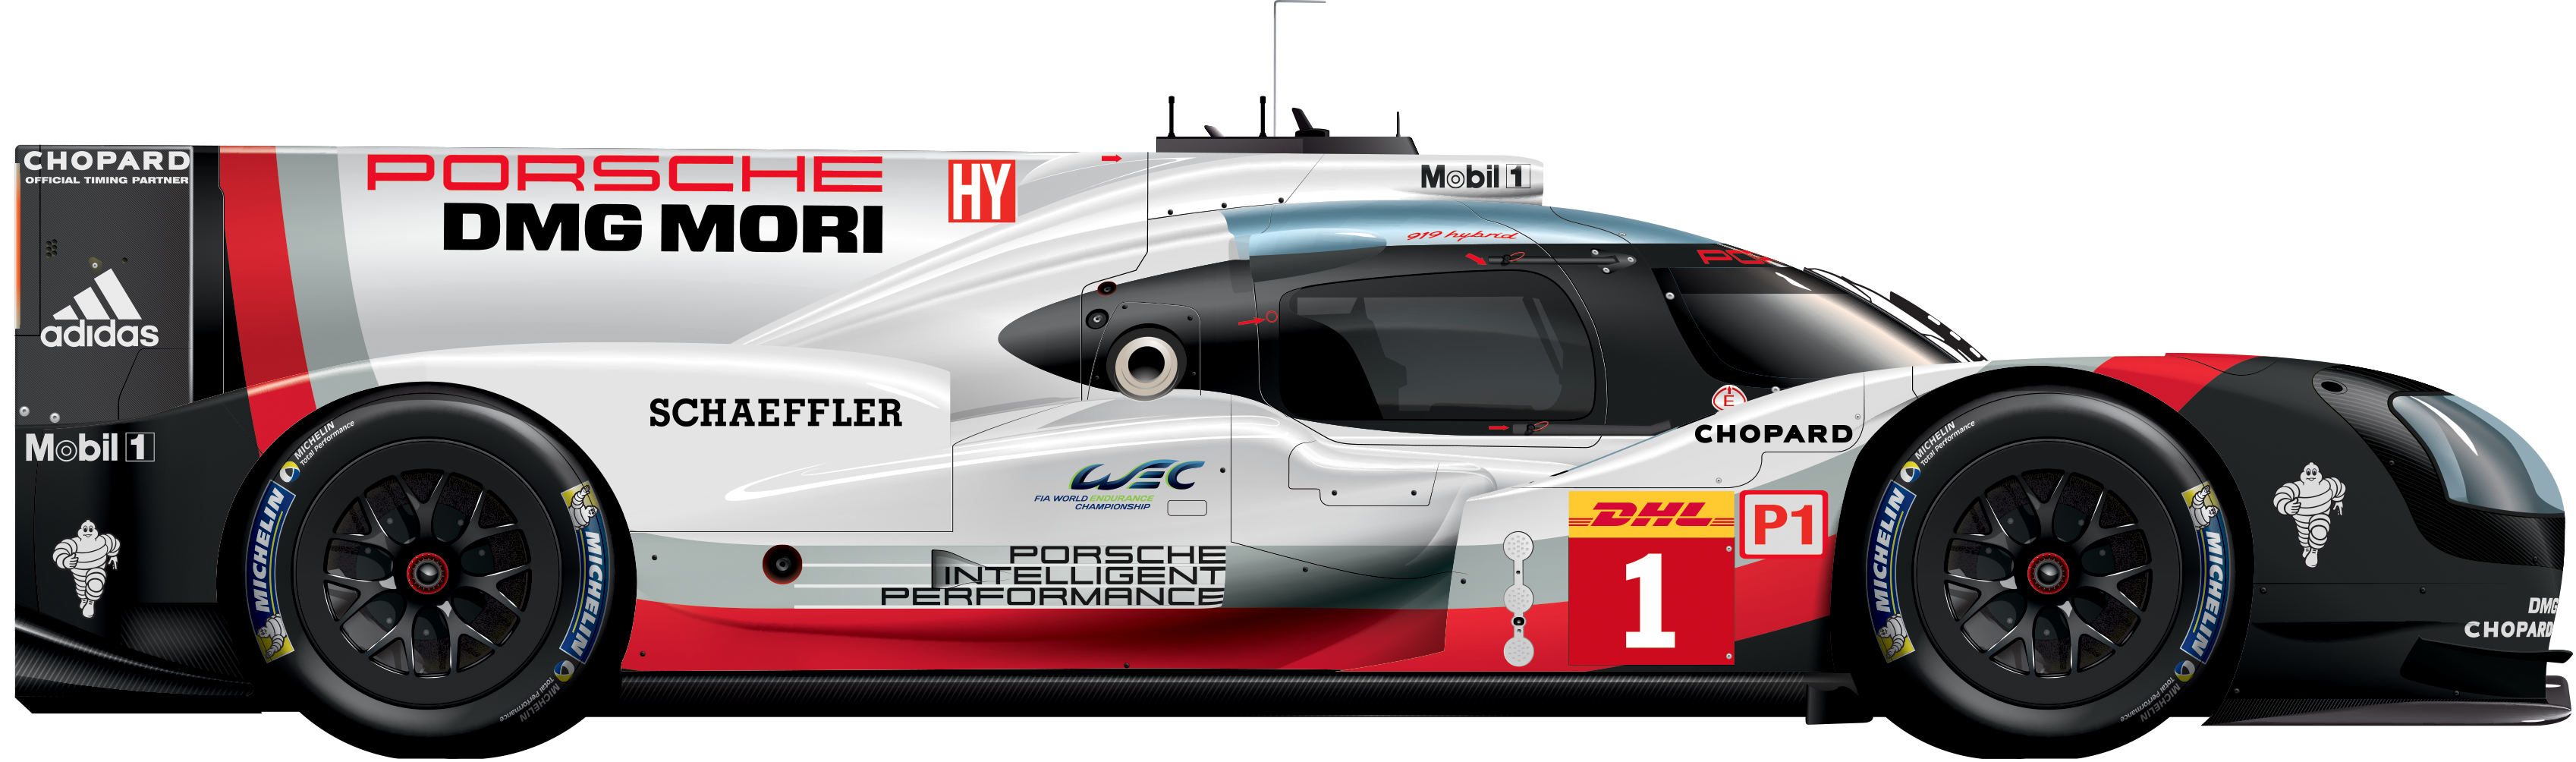 1 - Porsche 919 Hybrid - FIA World Endurance Championship